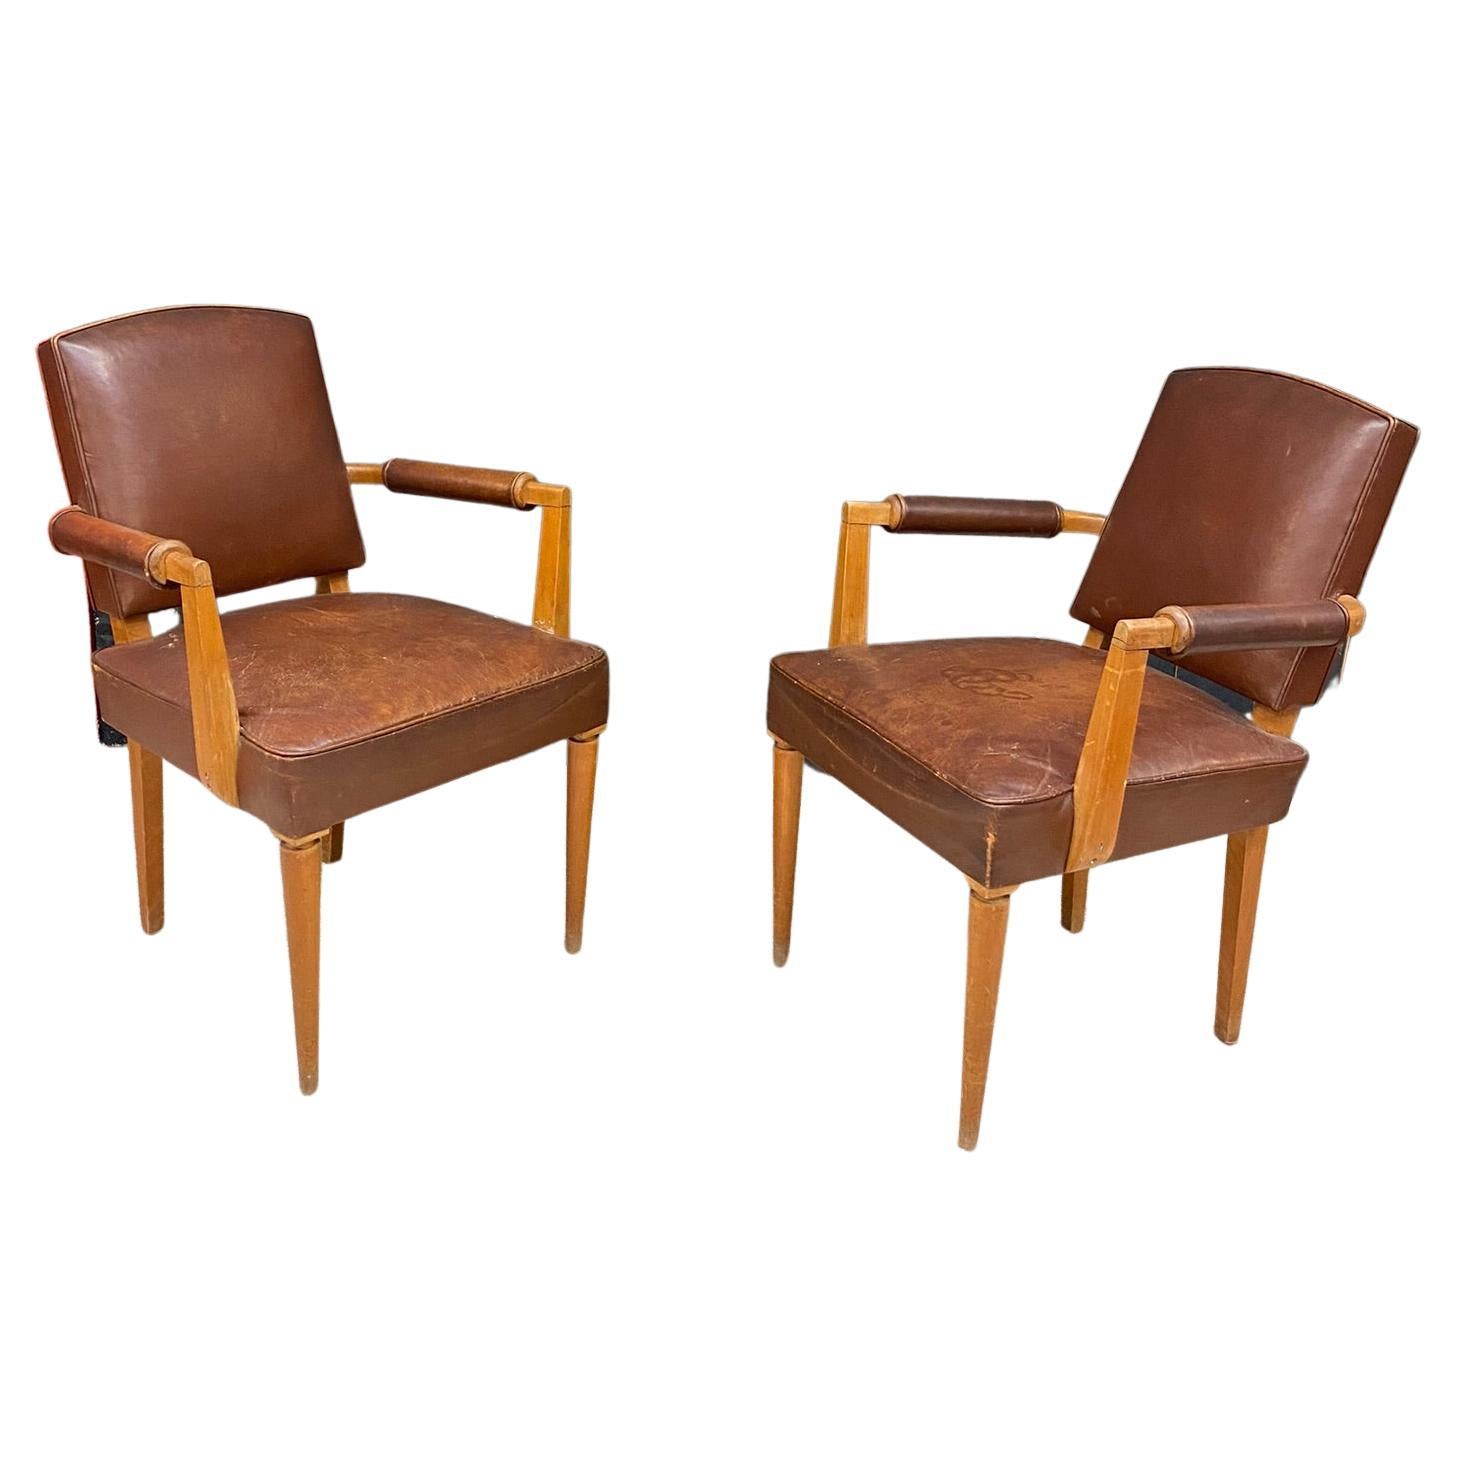 3 fauteuils art déco recouverts de cuir, vers 1930